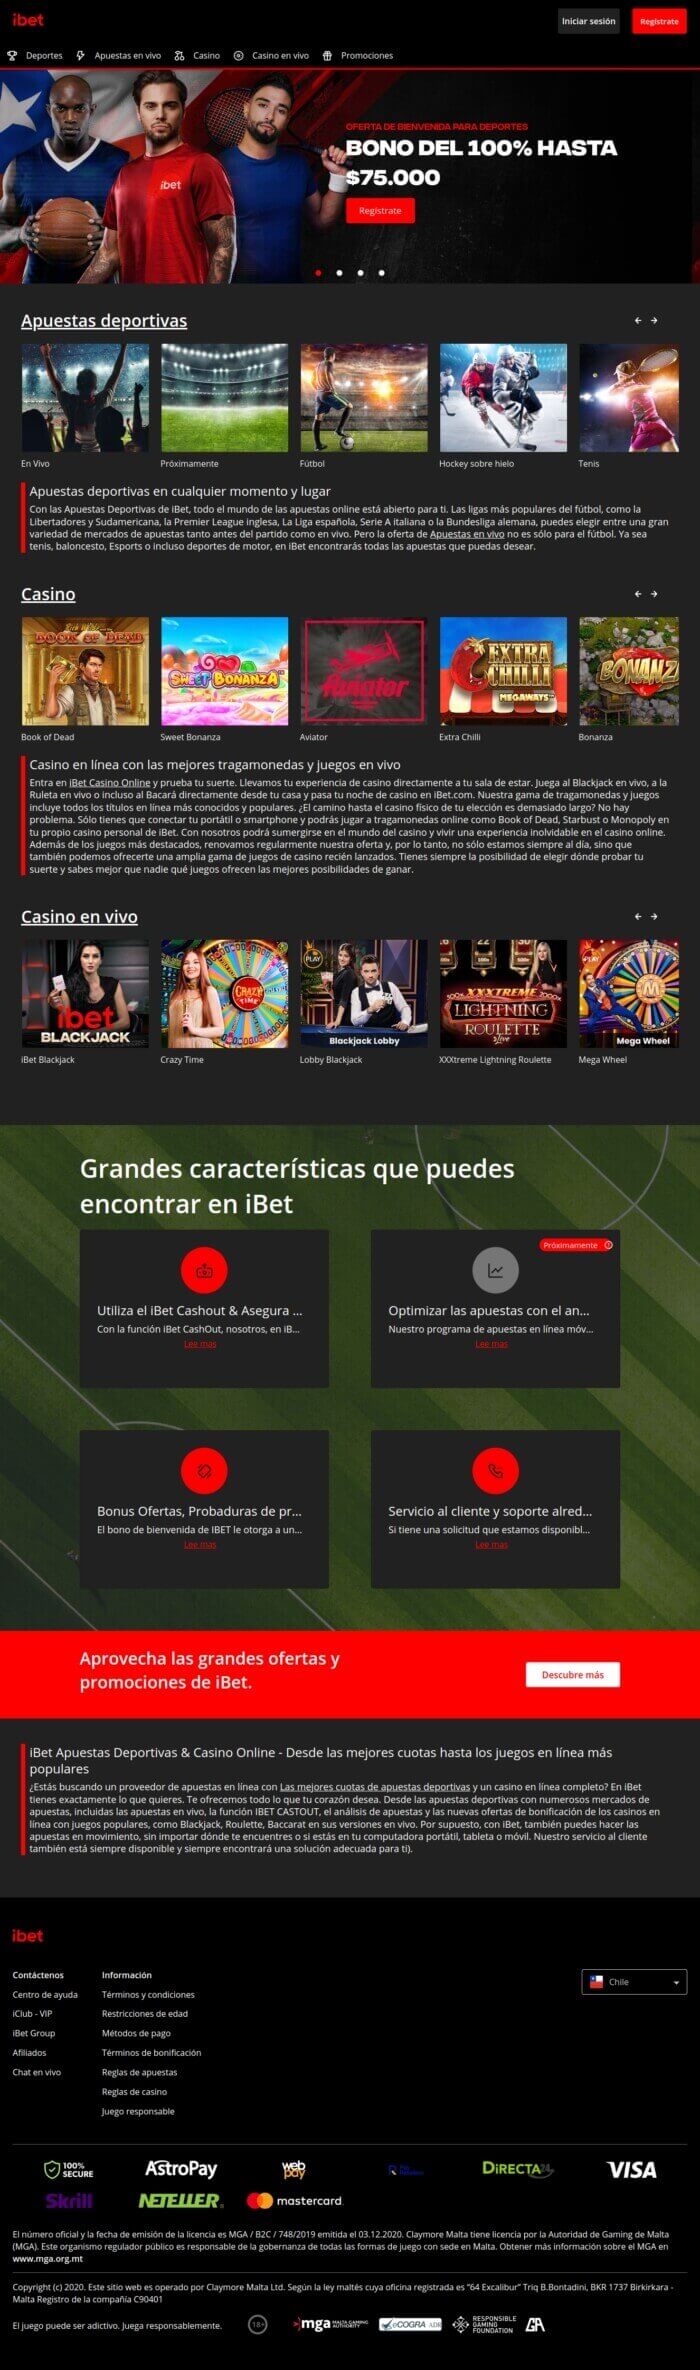 iBet Apuestas Deportivas y Casino Online Reseña